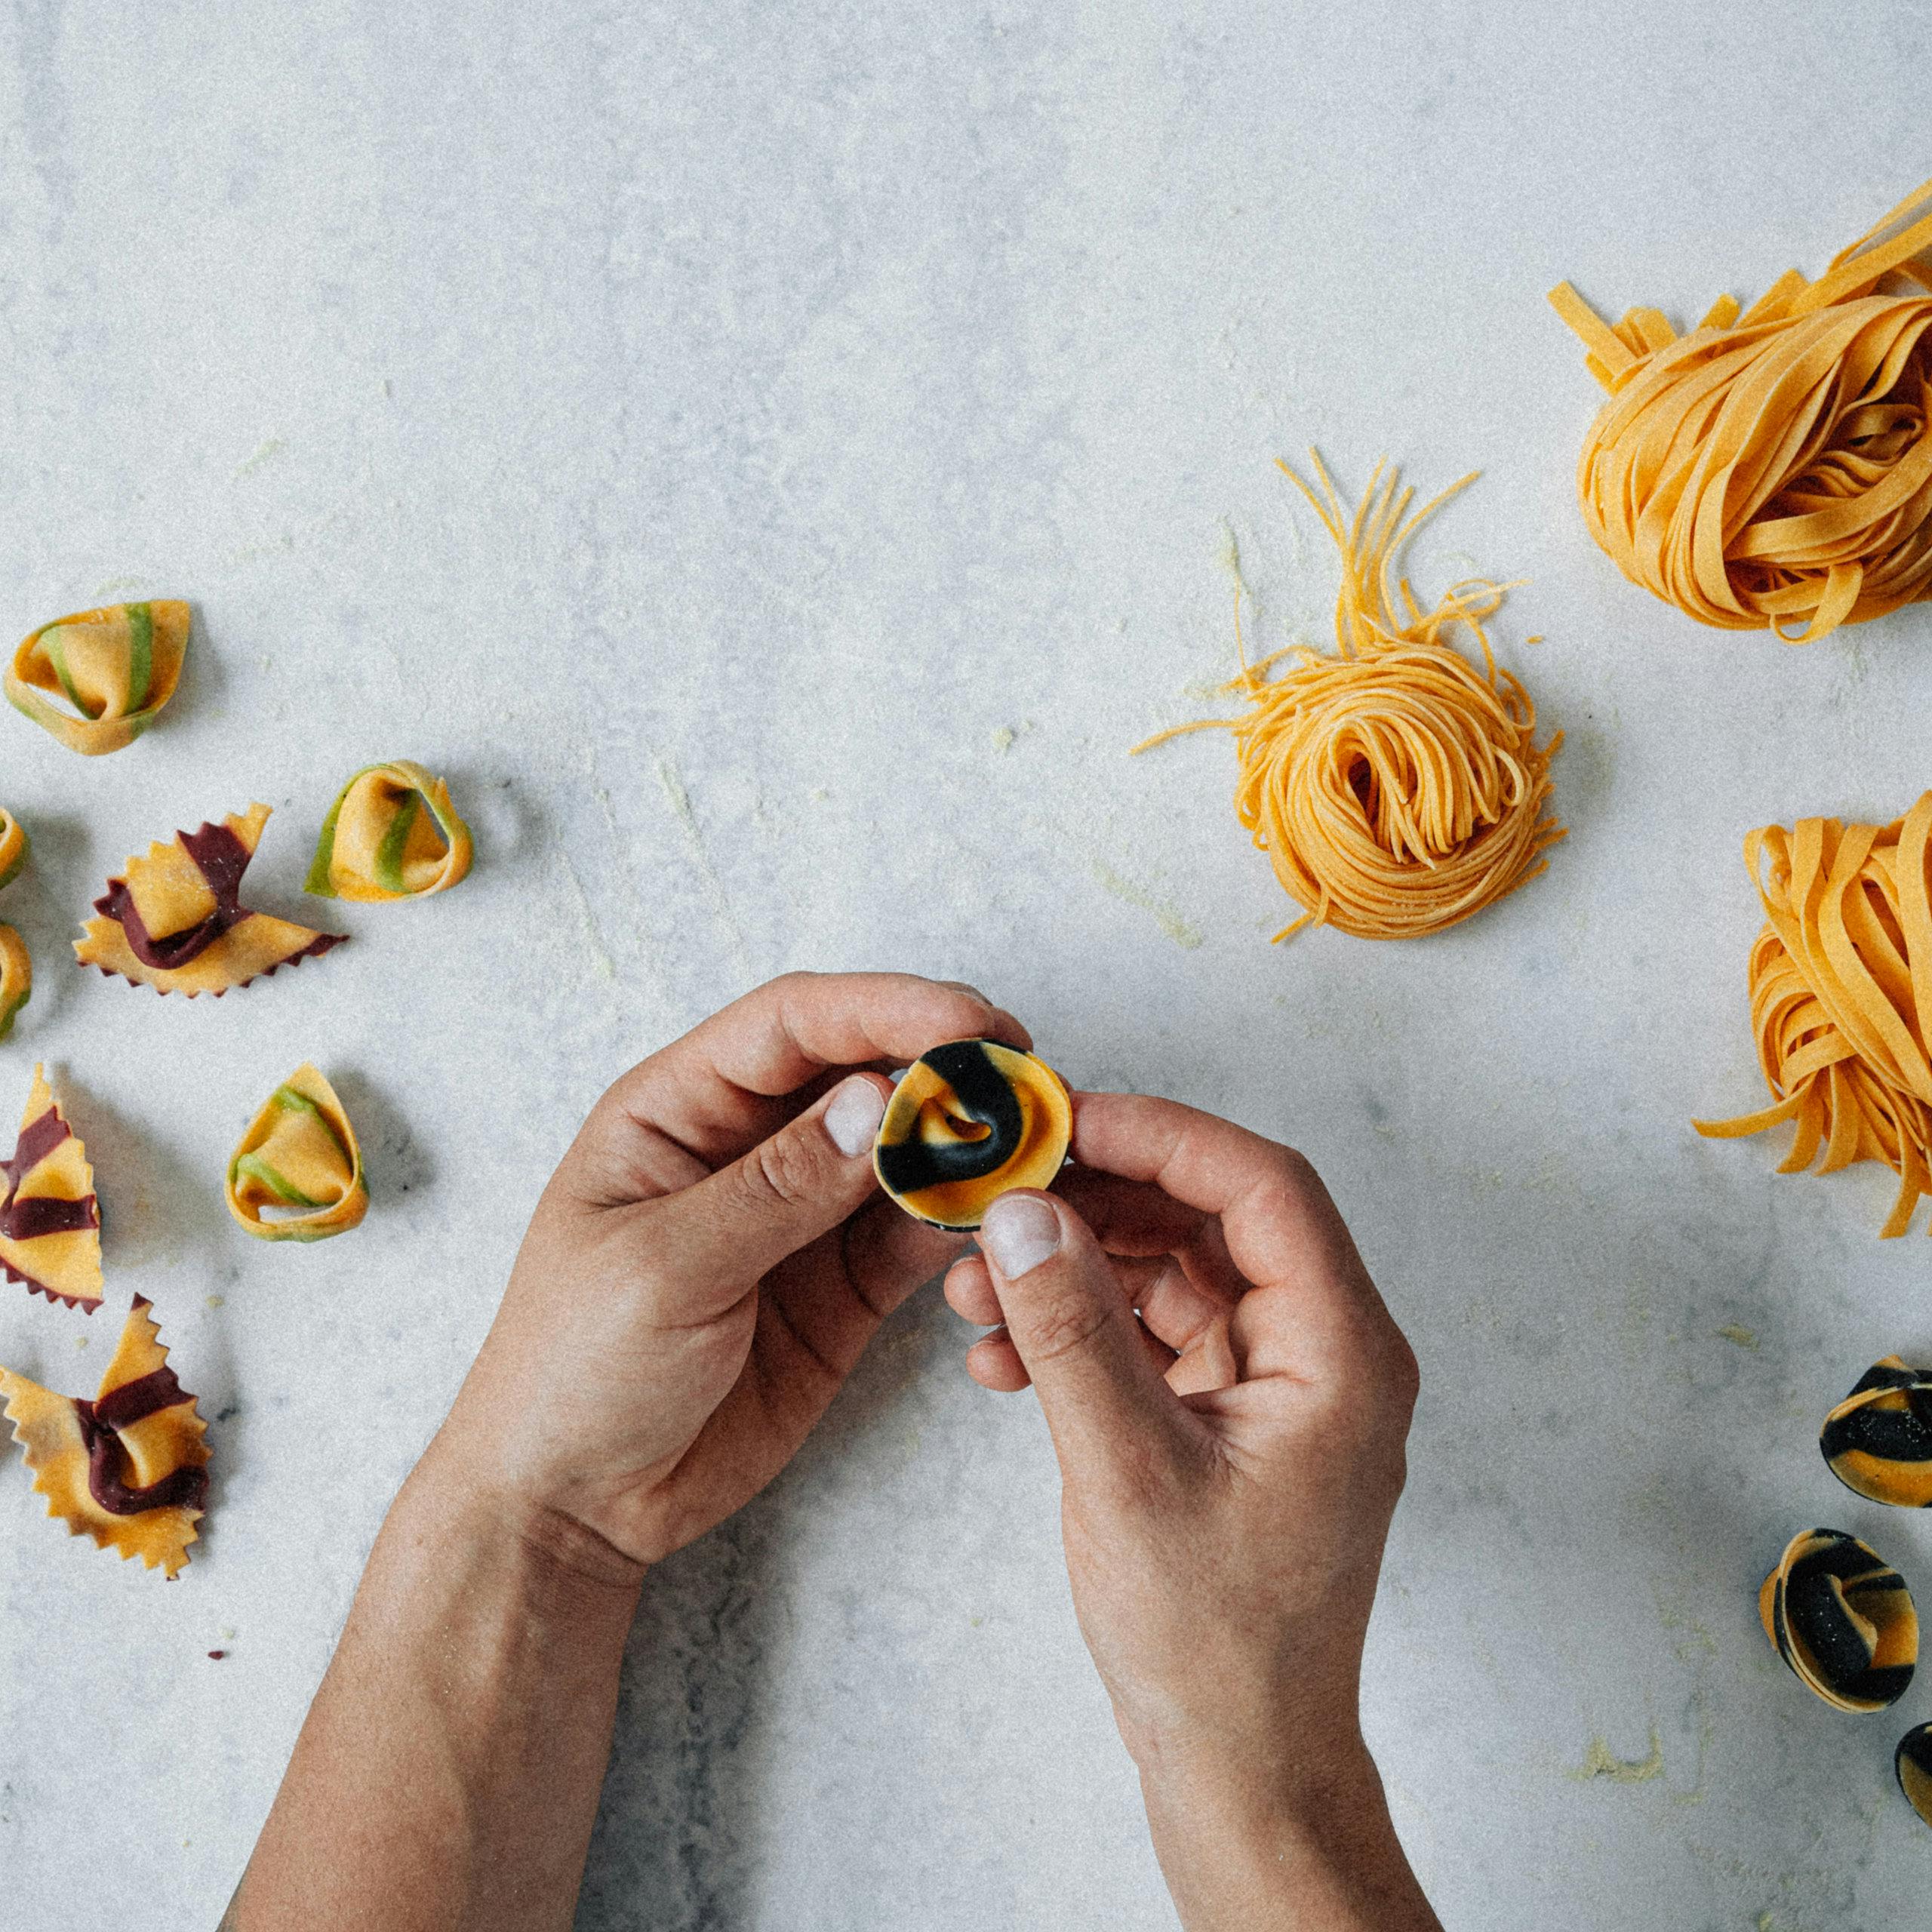 Creating pasta shapes